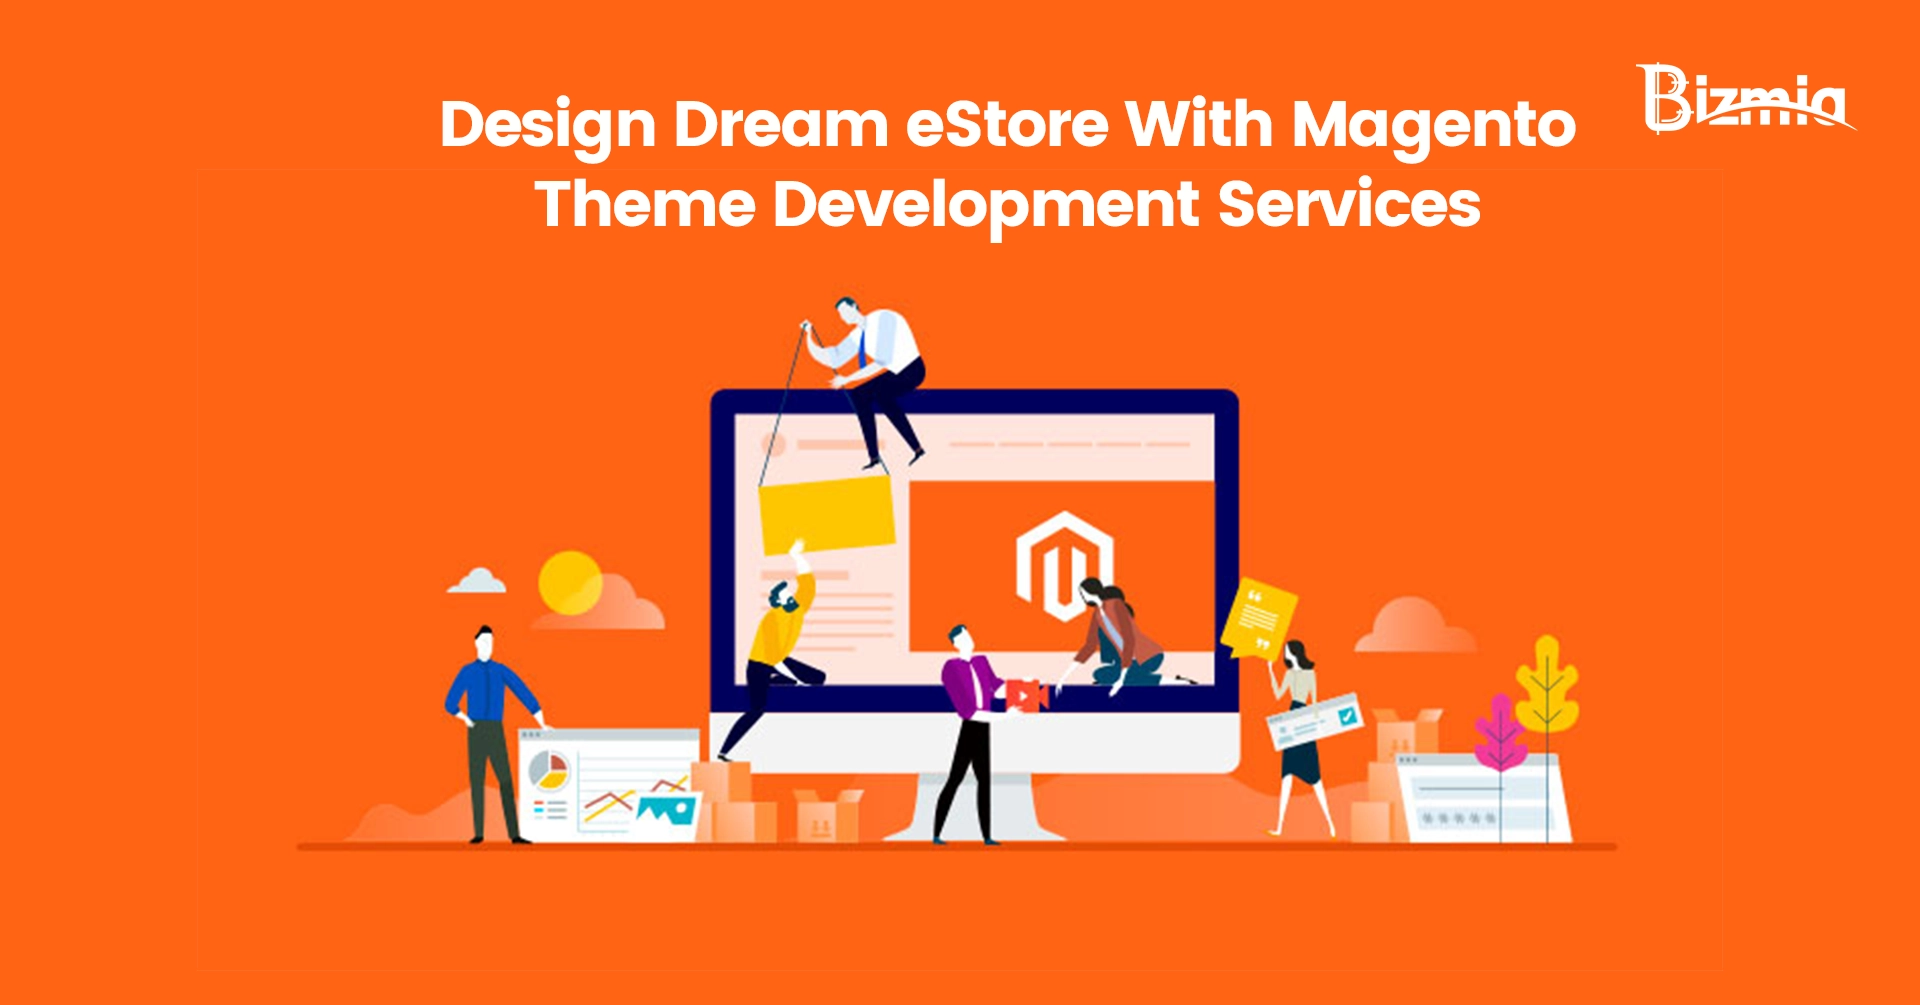 Design Dream eStore With Magento Theme Development Services - Bizmia